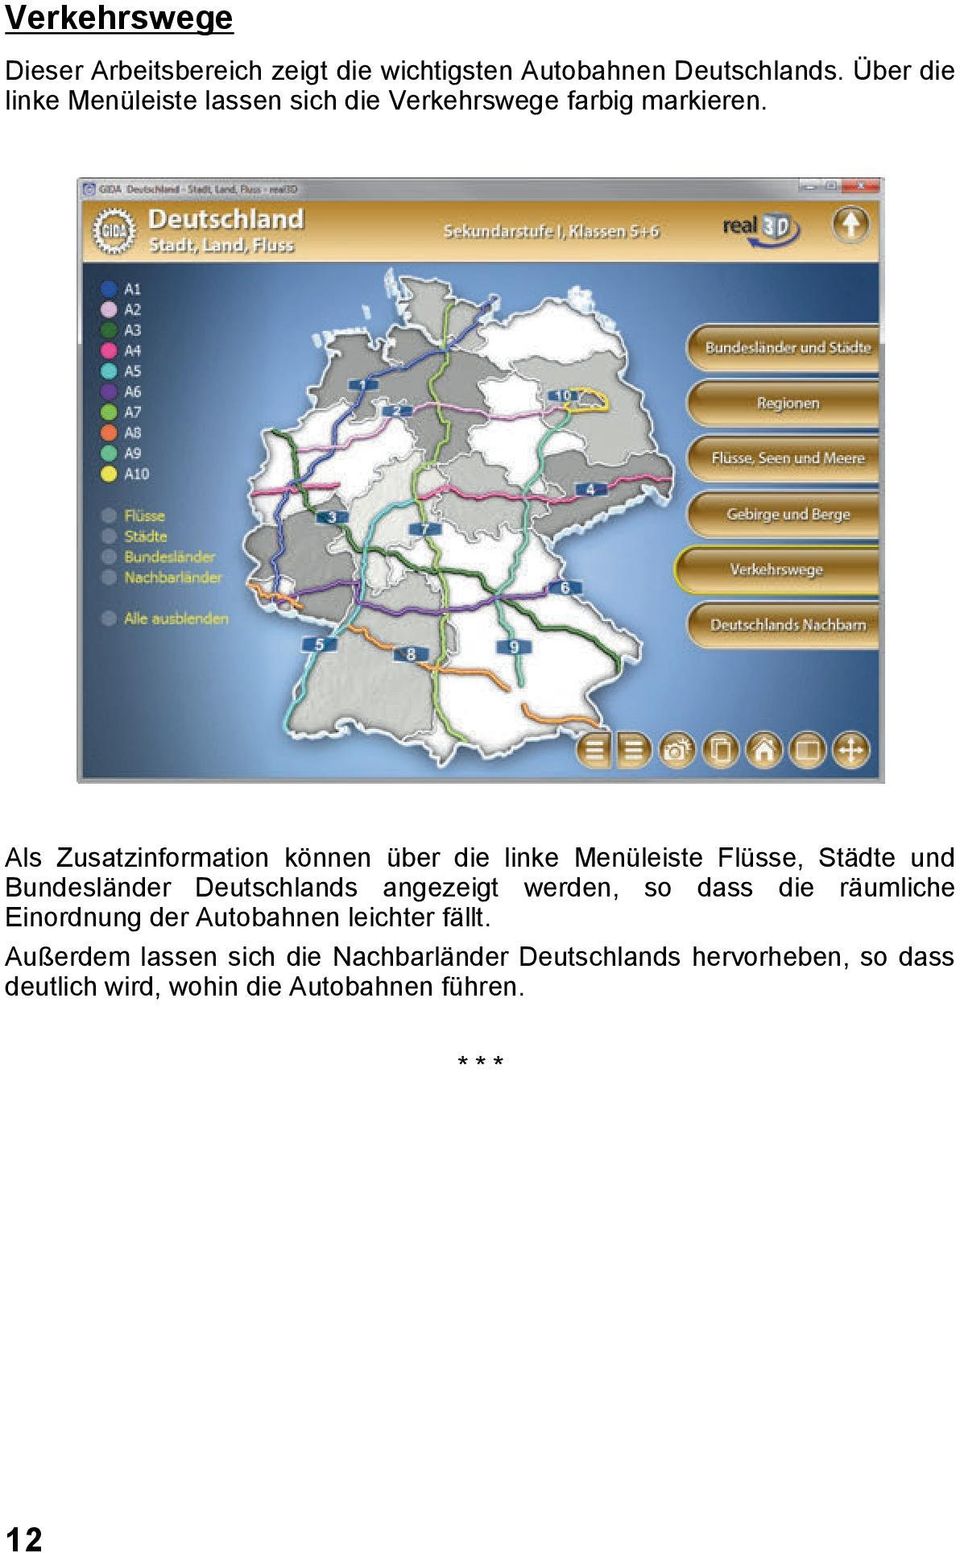 Als Zusatzinformation können über die linke Menüleiste Flüsse, Städte und Bundesländer Deutschlands angezeigt